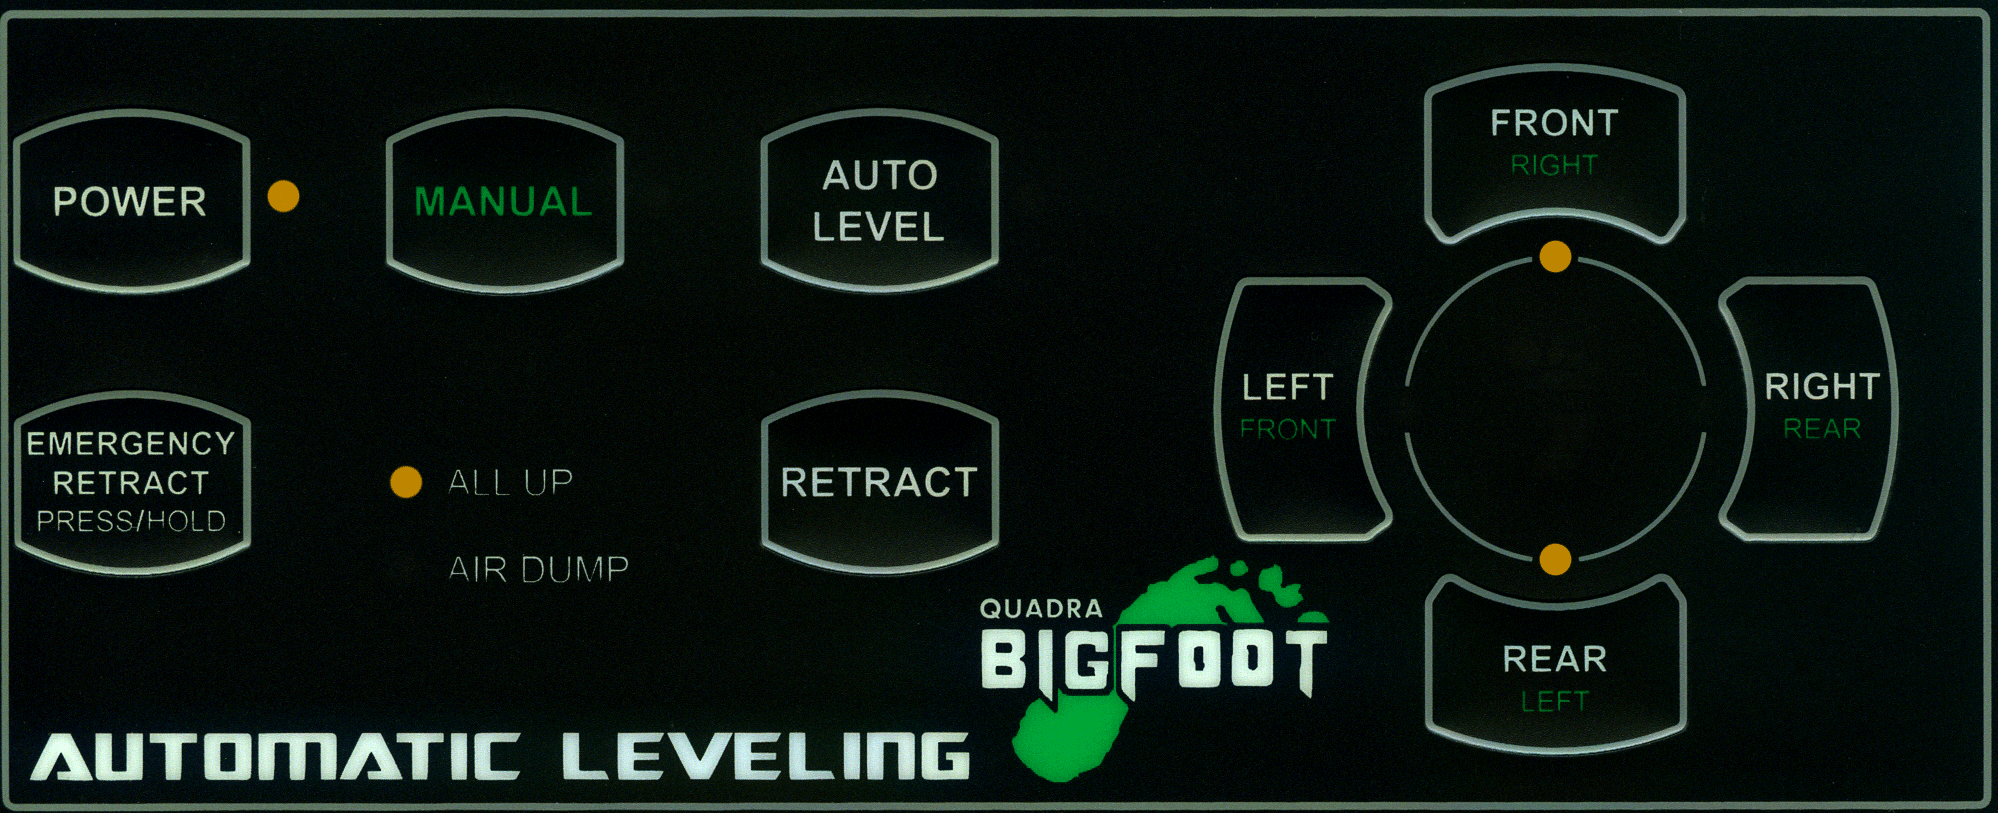 Bigfoot Leveling System Wiring Diagram - CIKERI